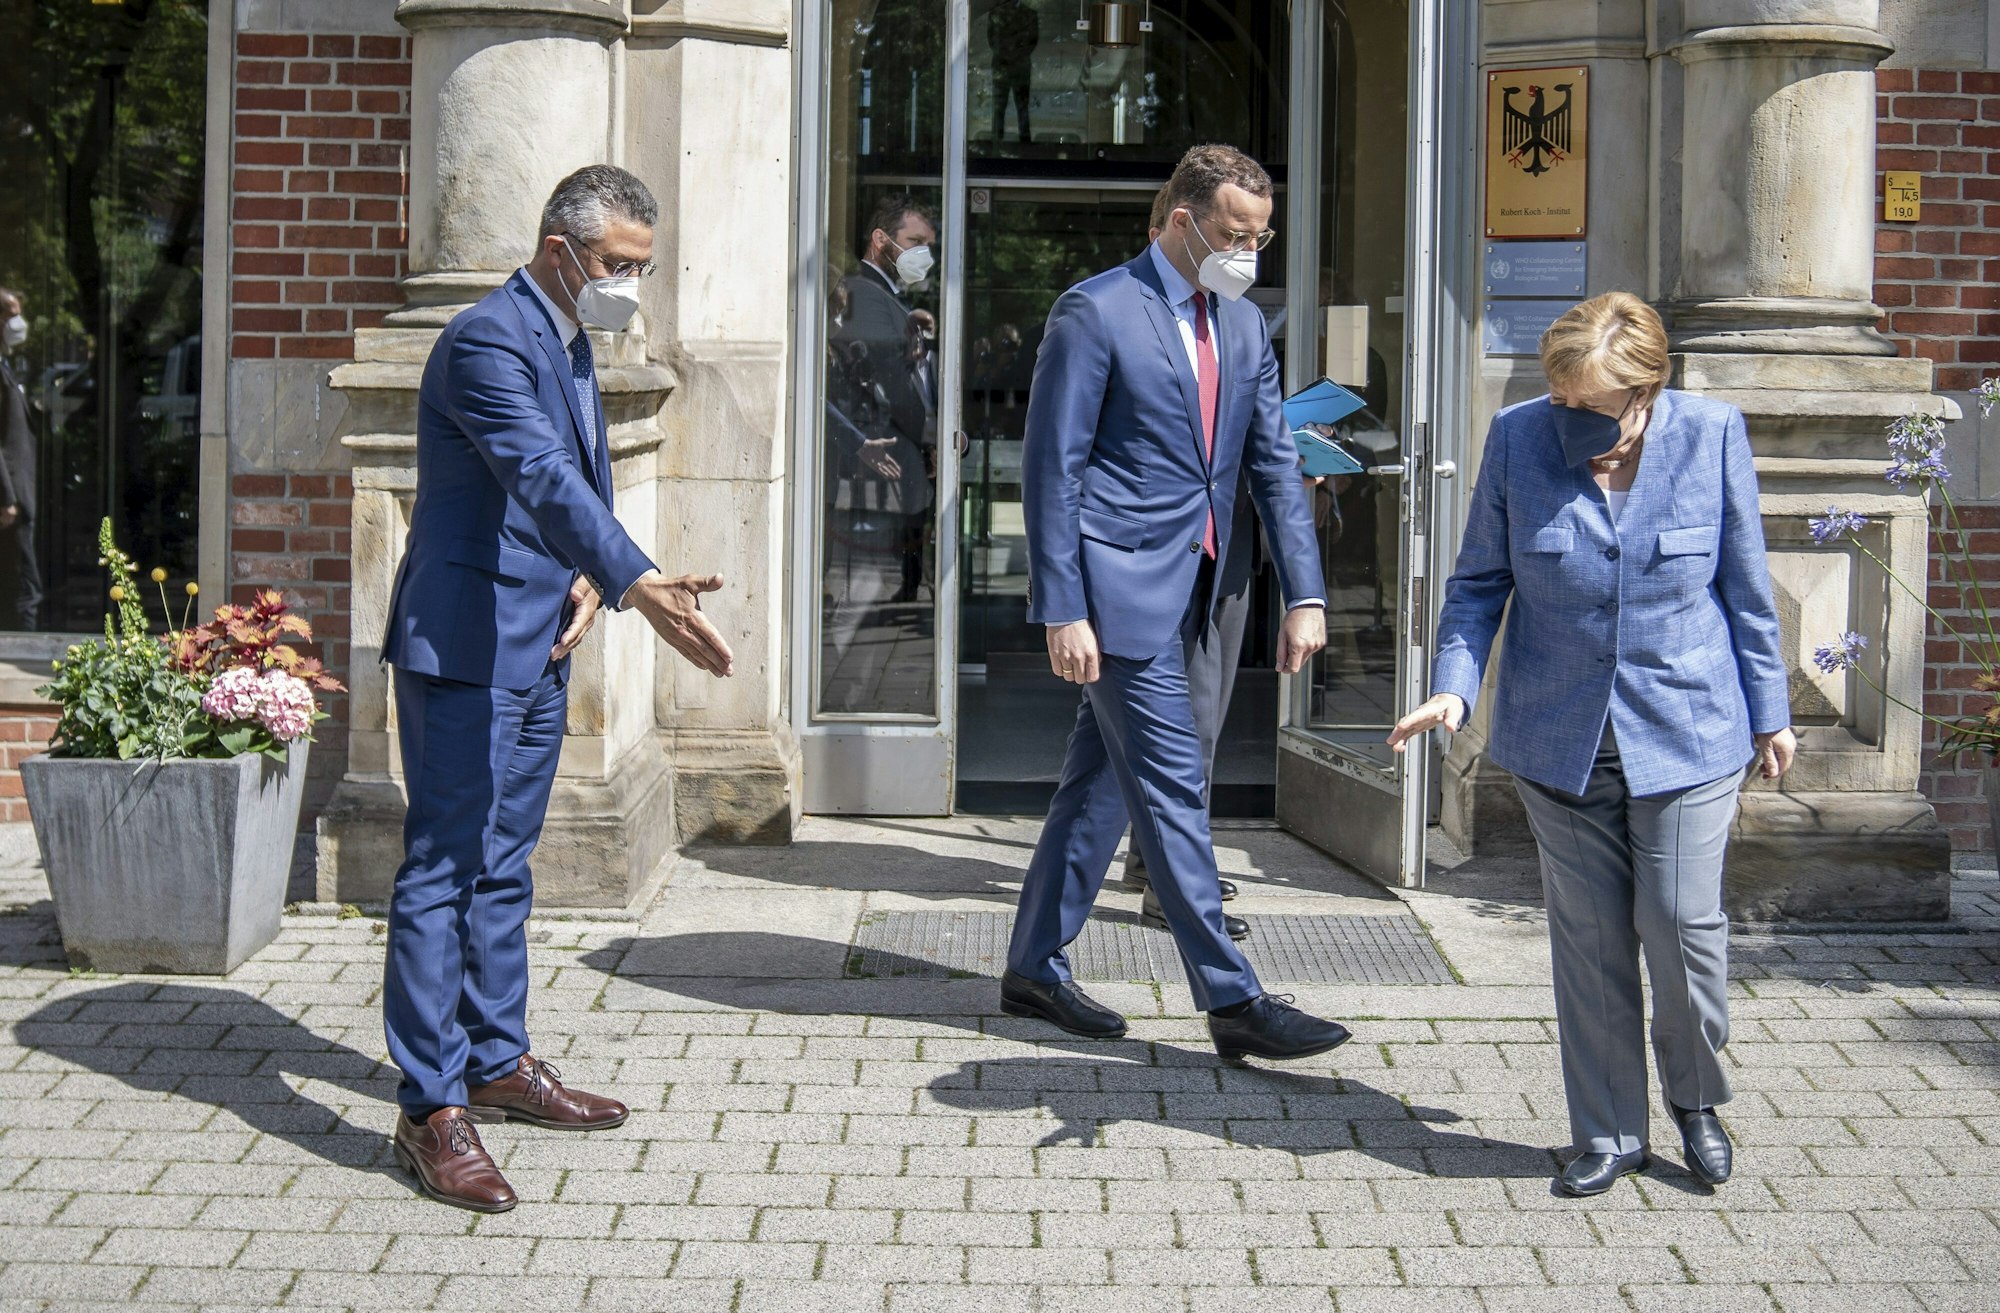 Kanzlerin Angela Merkel, Gesundheitsminister Spahn und RKI-Chef Lothar Wieler stehen vor dem Eingang des Robert Koch-Instituts.